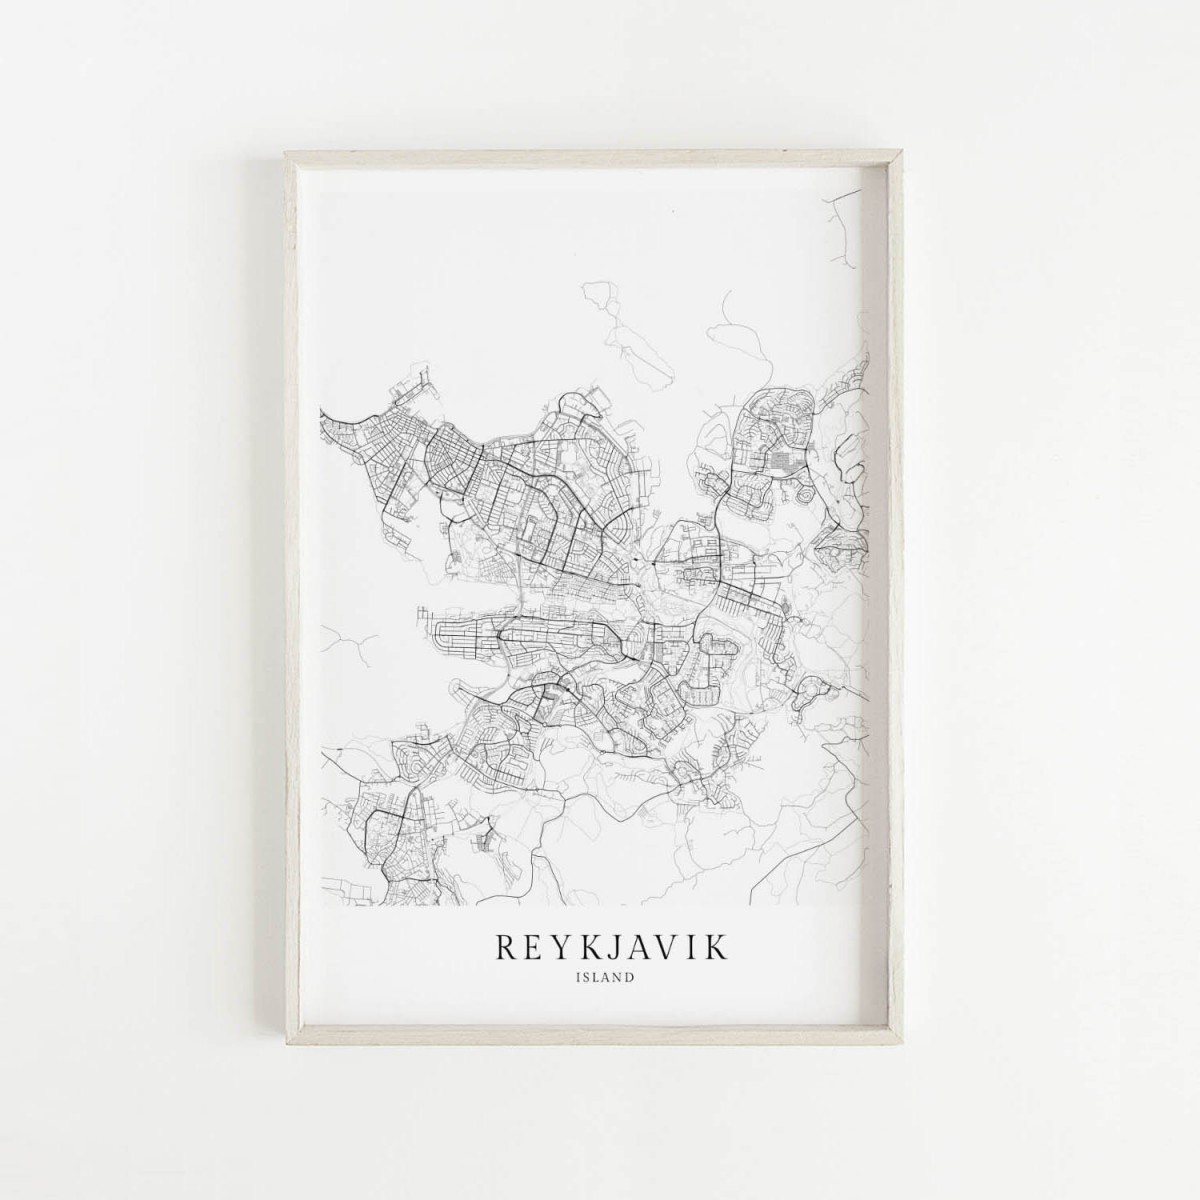 REYKJAVÍK als hochwertiges Poster im skandinavischen Stil von Skanemarie +++ Geschenkidee